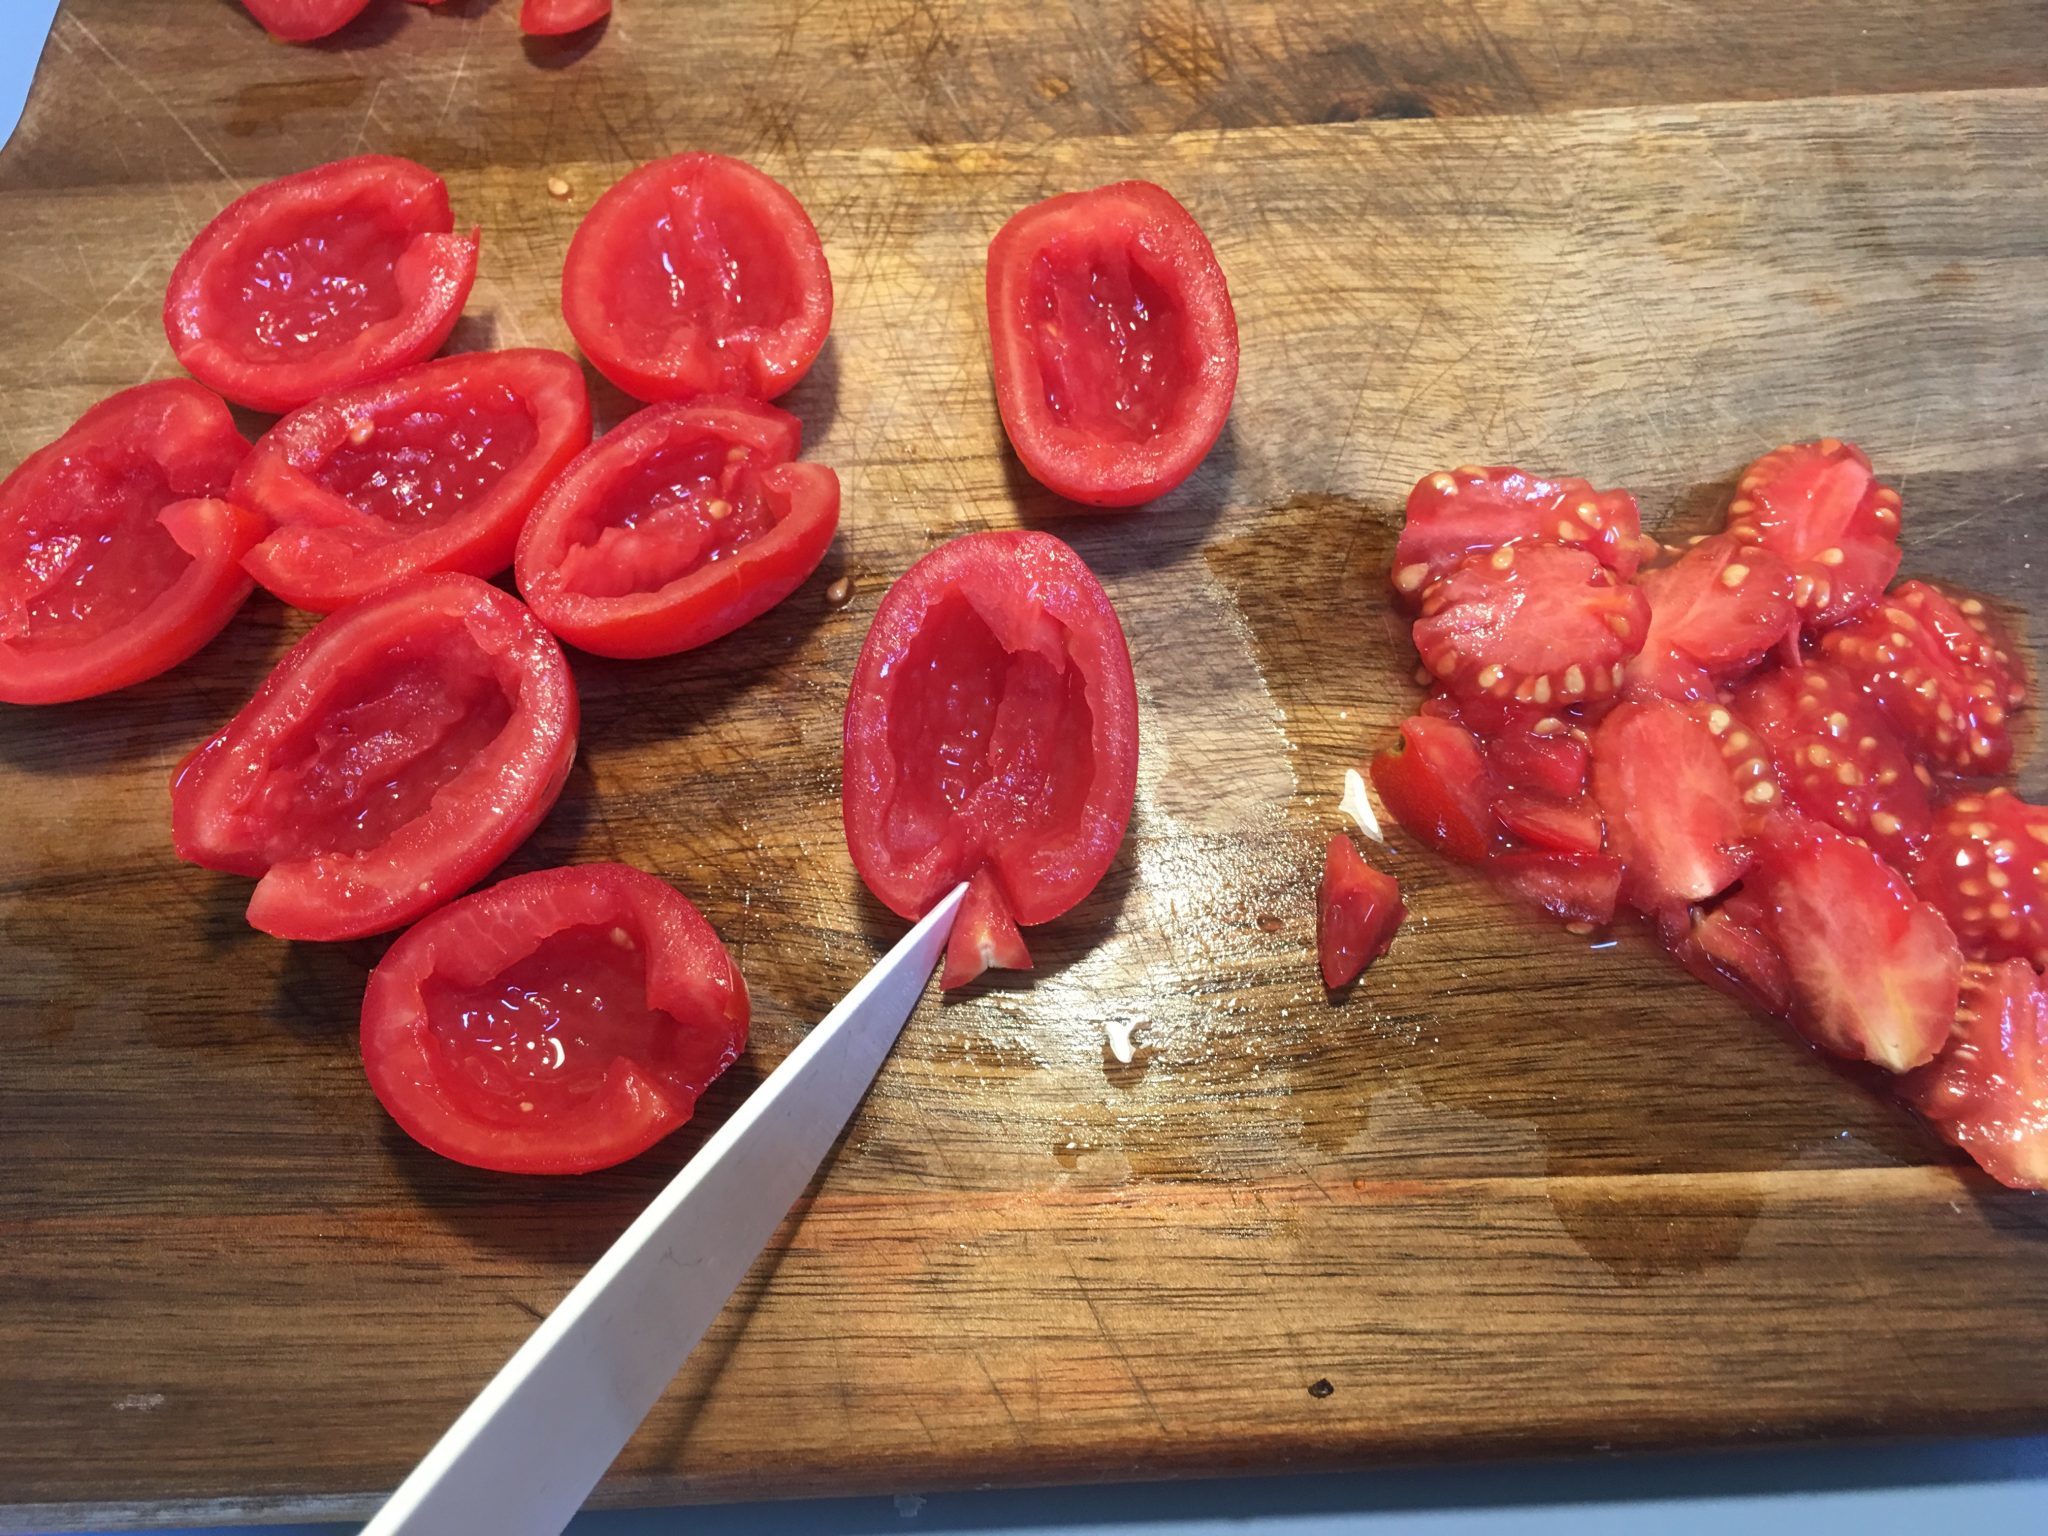 Panzerottini al forno last minute - pomodori tagliati a metà privati dei semi